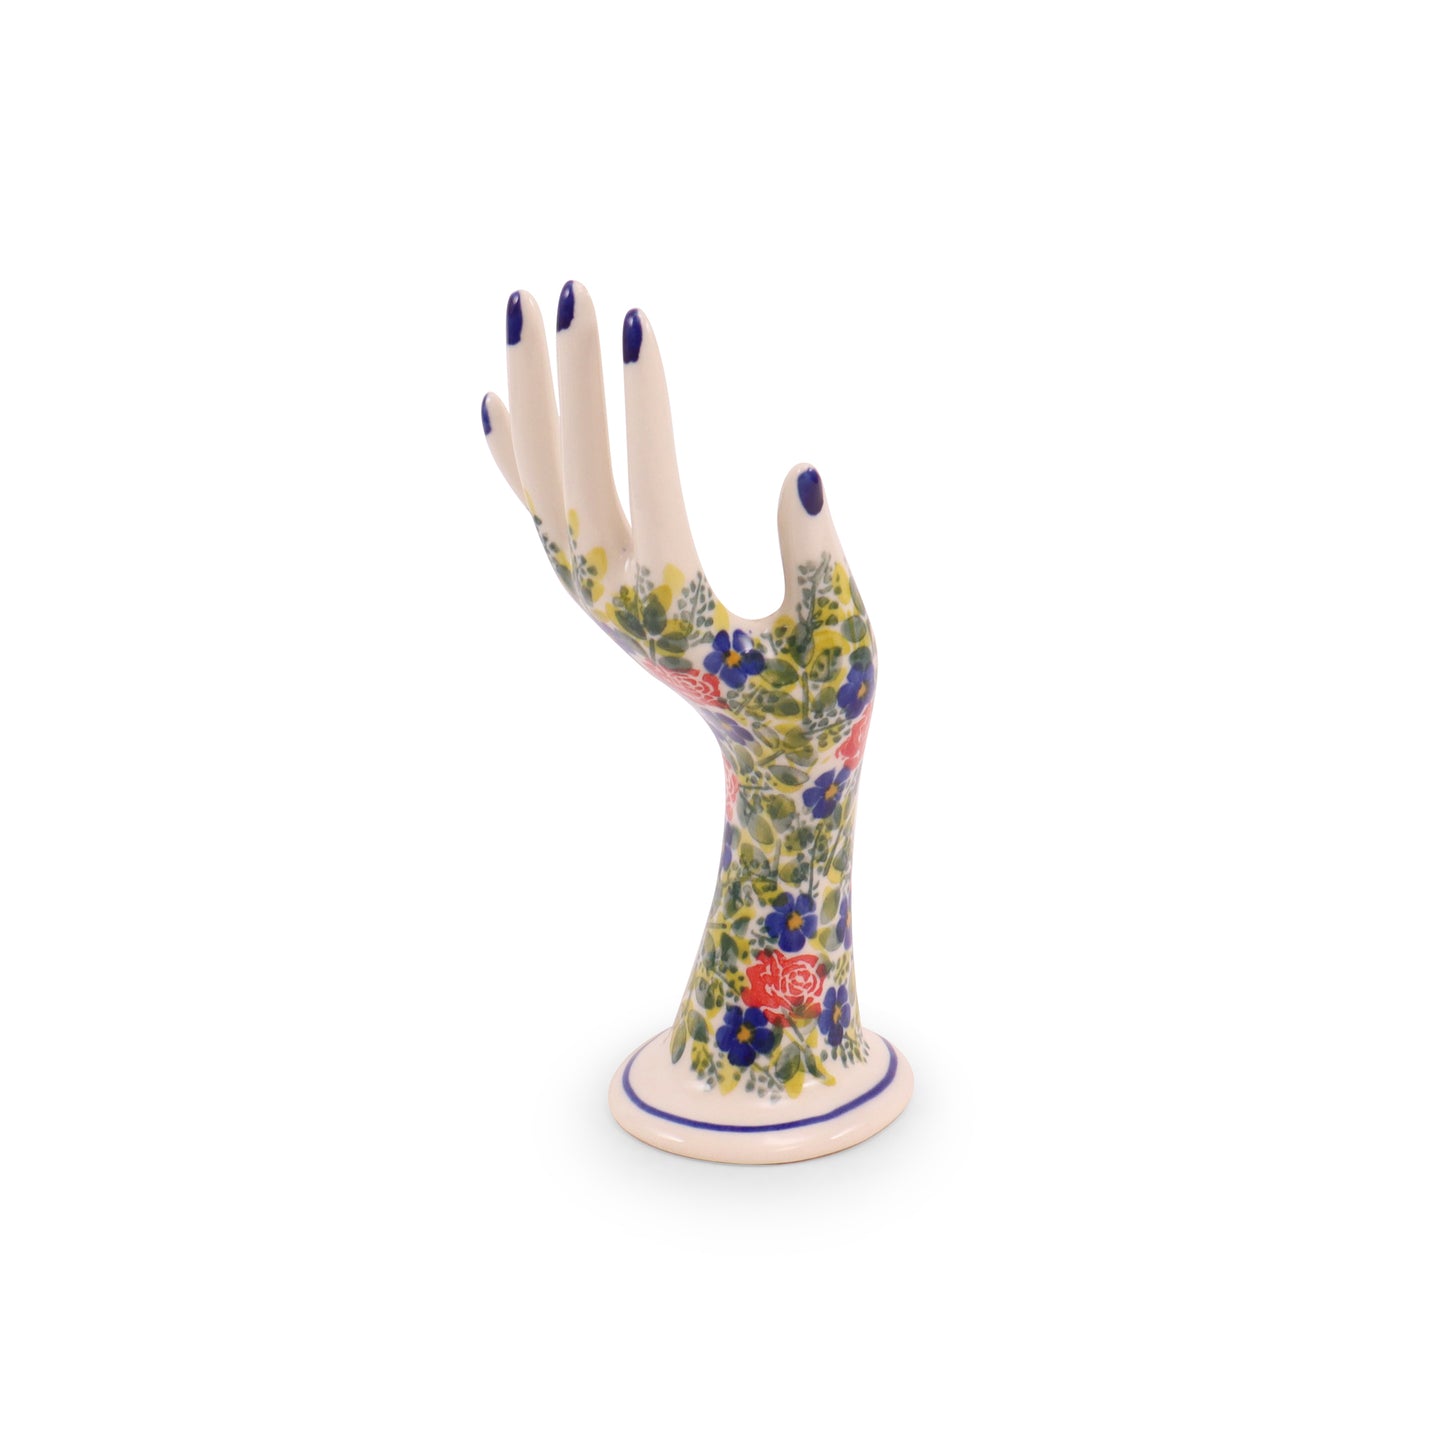 3"x8" Hand Figurine. Pattern: Garden Plot